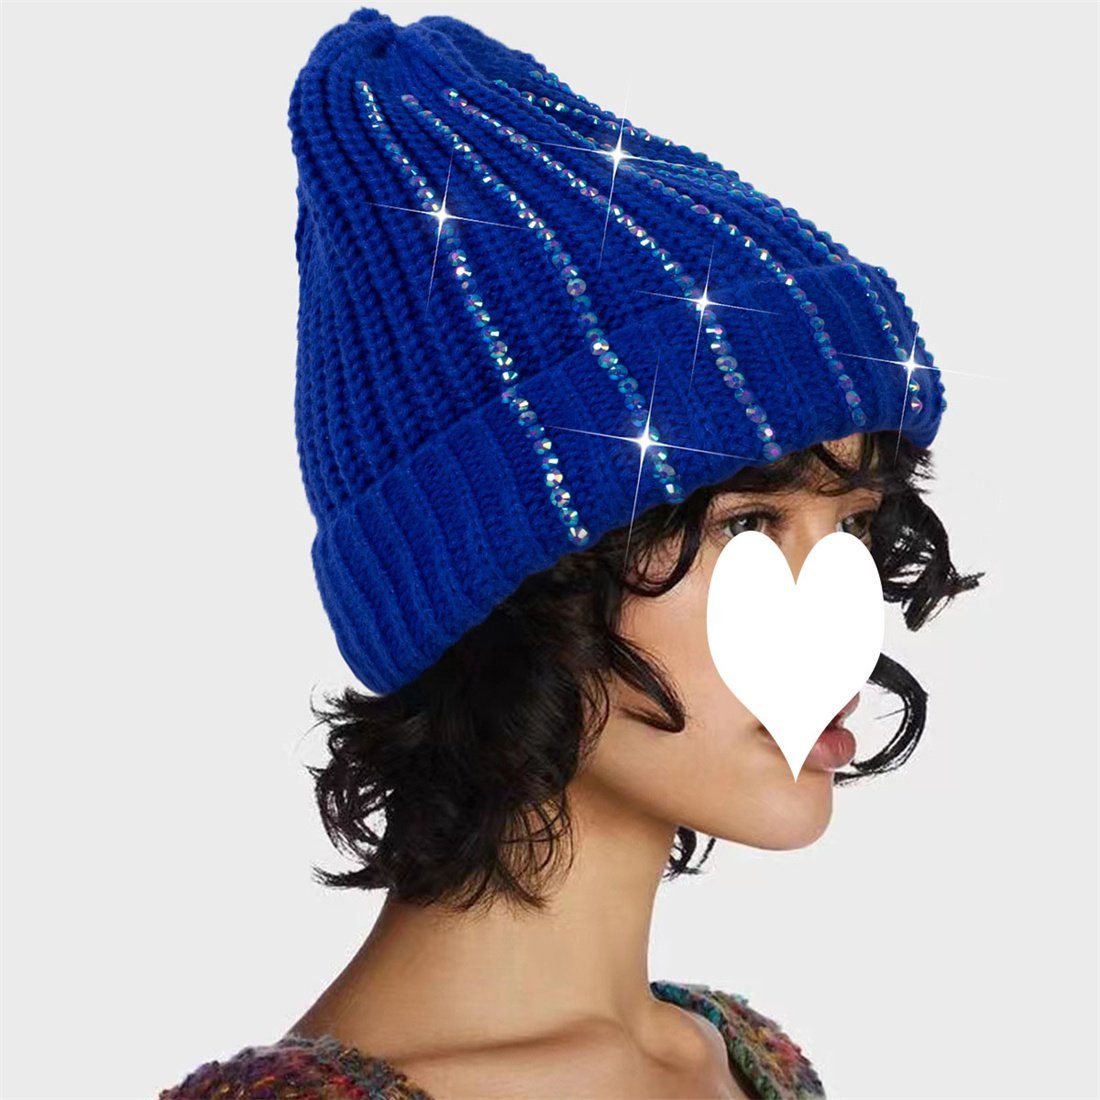 DÖRÖY Strickmütze Damen Outdoor-Mode warme Strickmütze, Winter verdickt warme Wollmütze blau